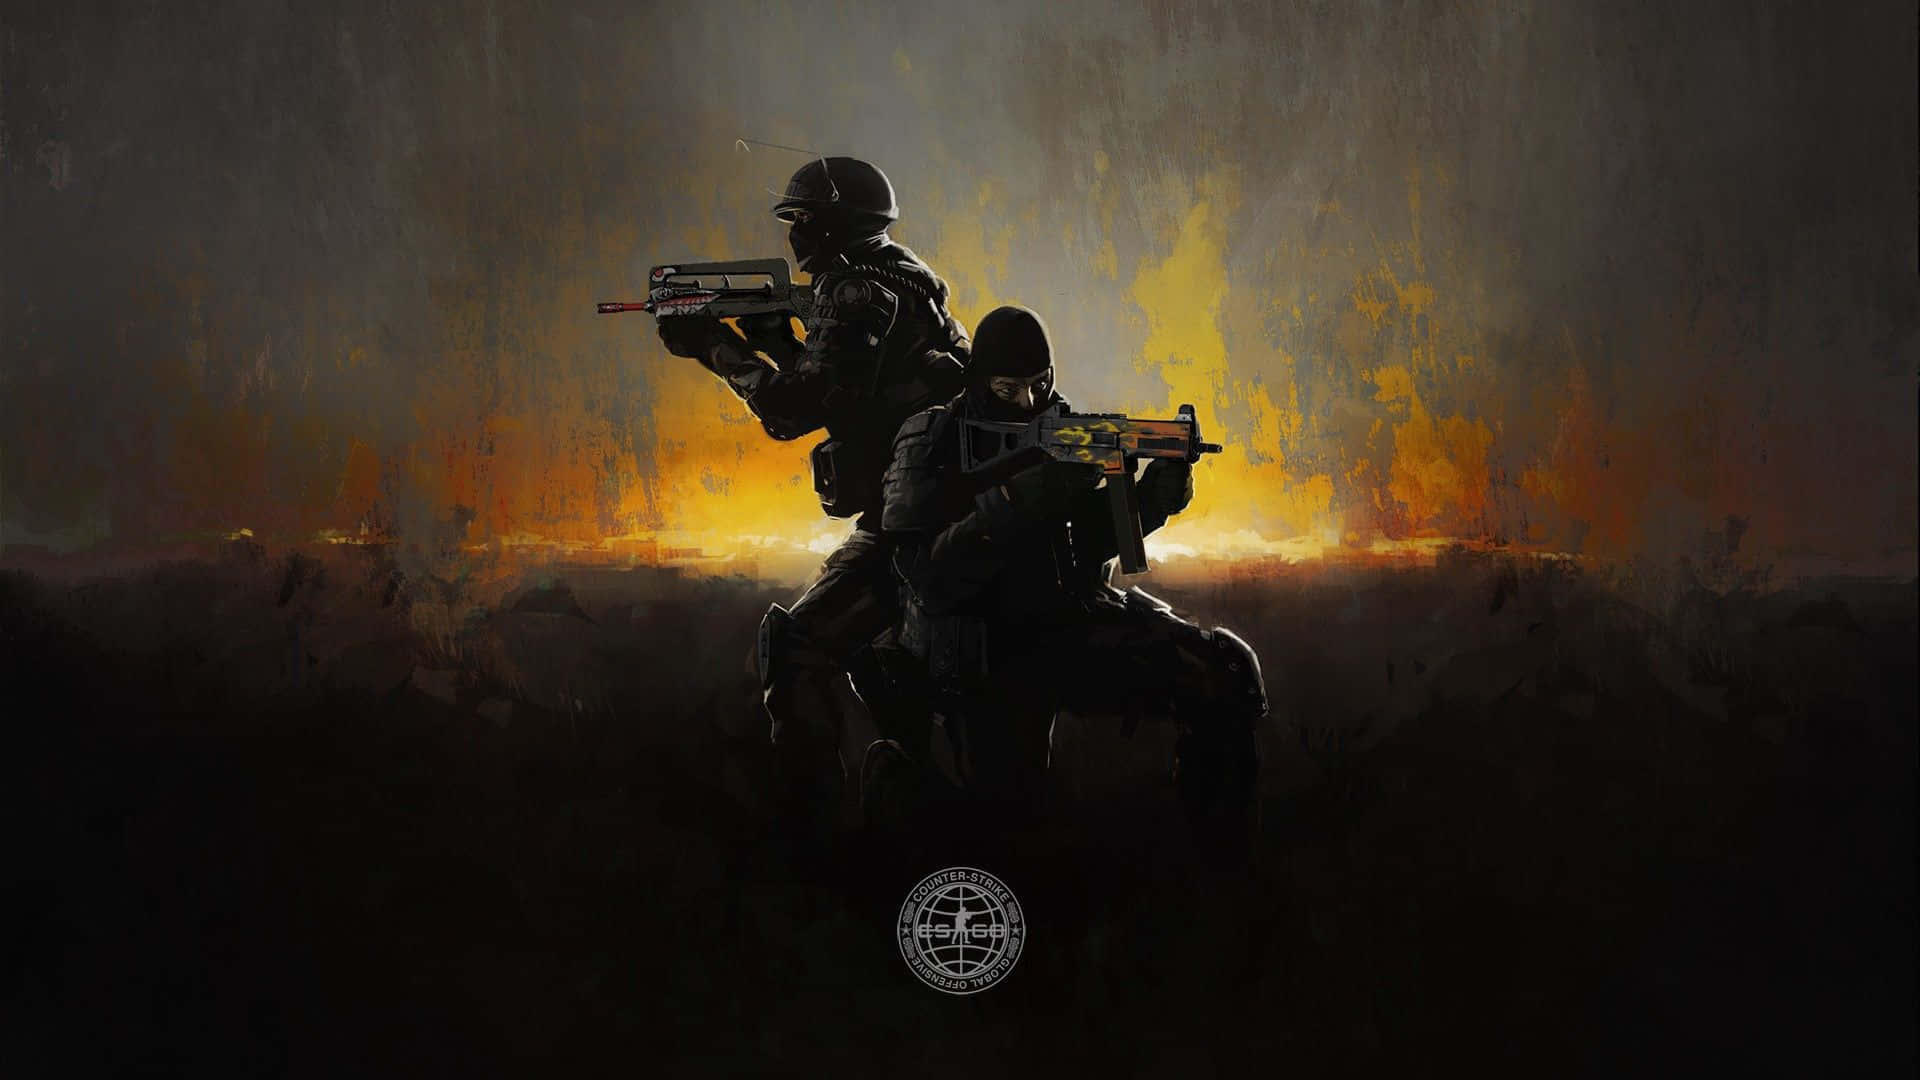 Zweisoldaten Mit Gewehren Im Hintergrund Wallpaper